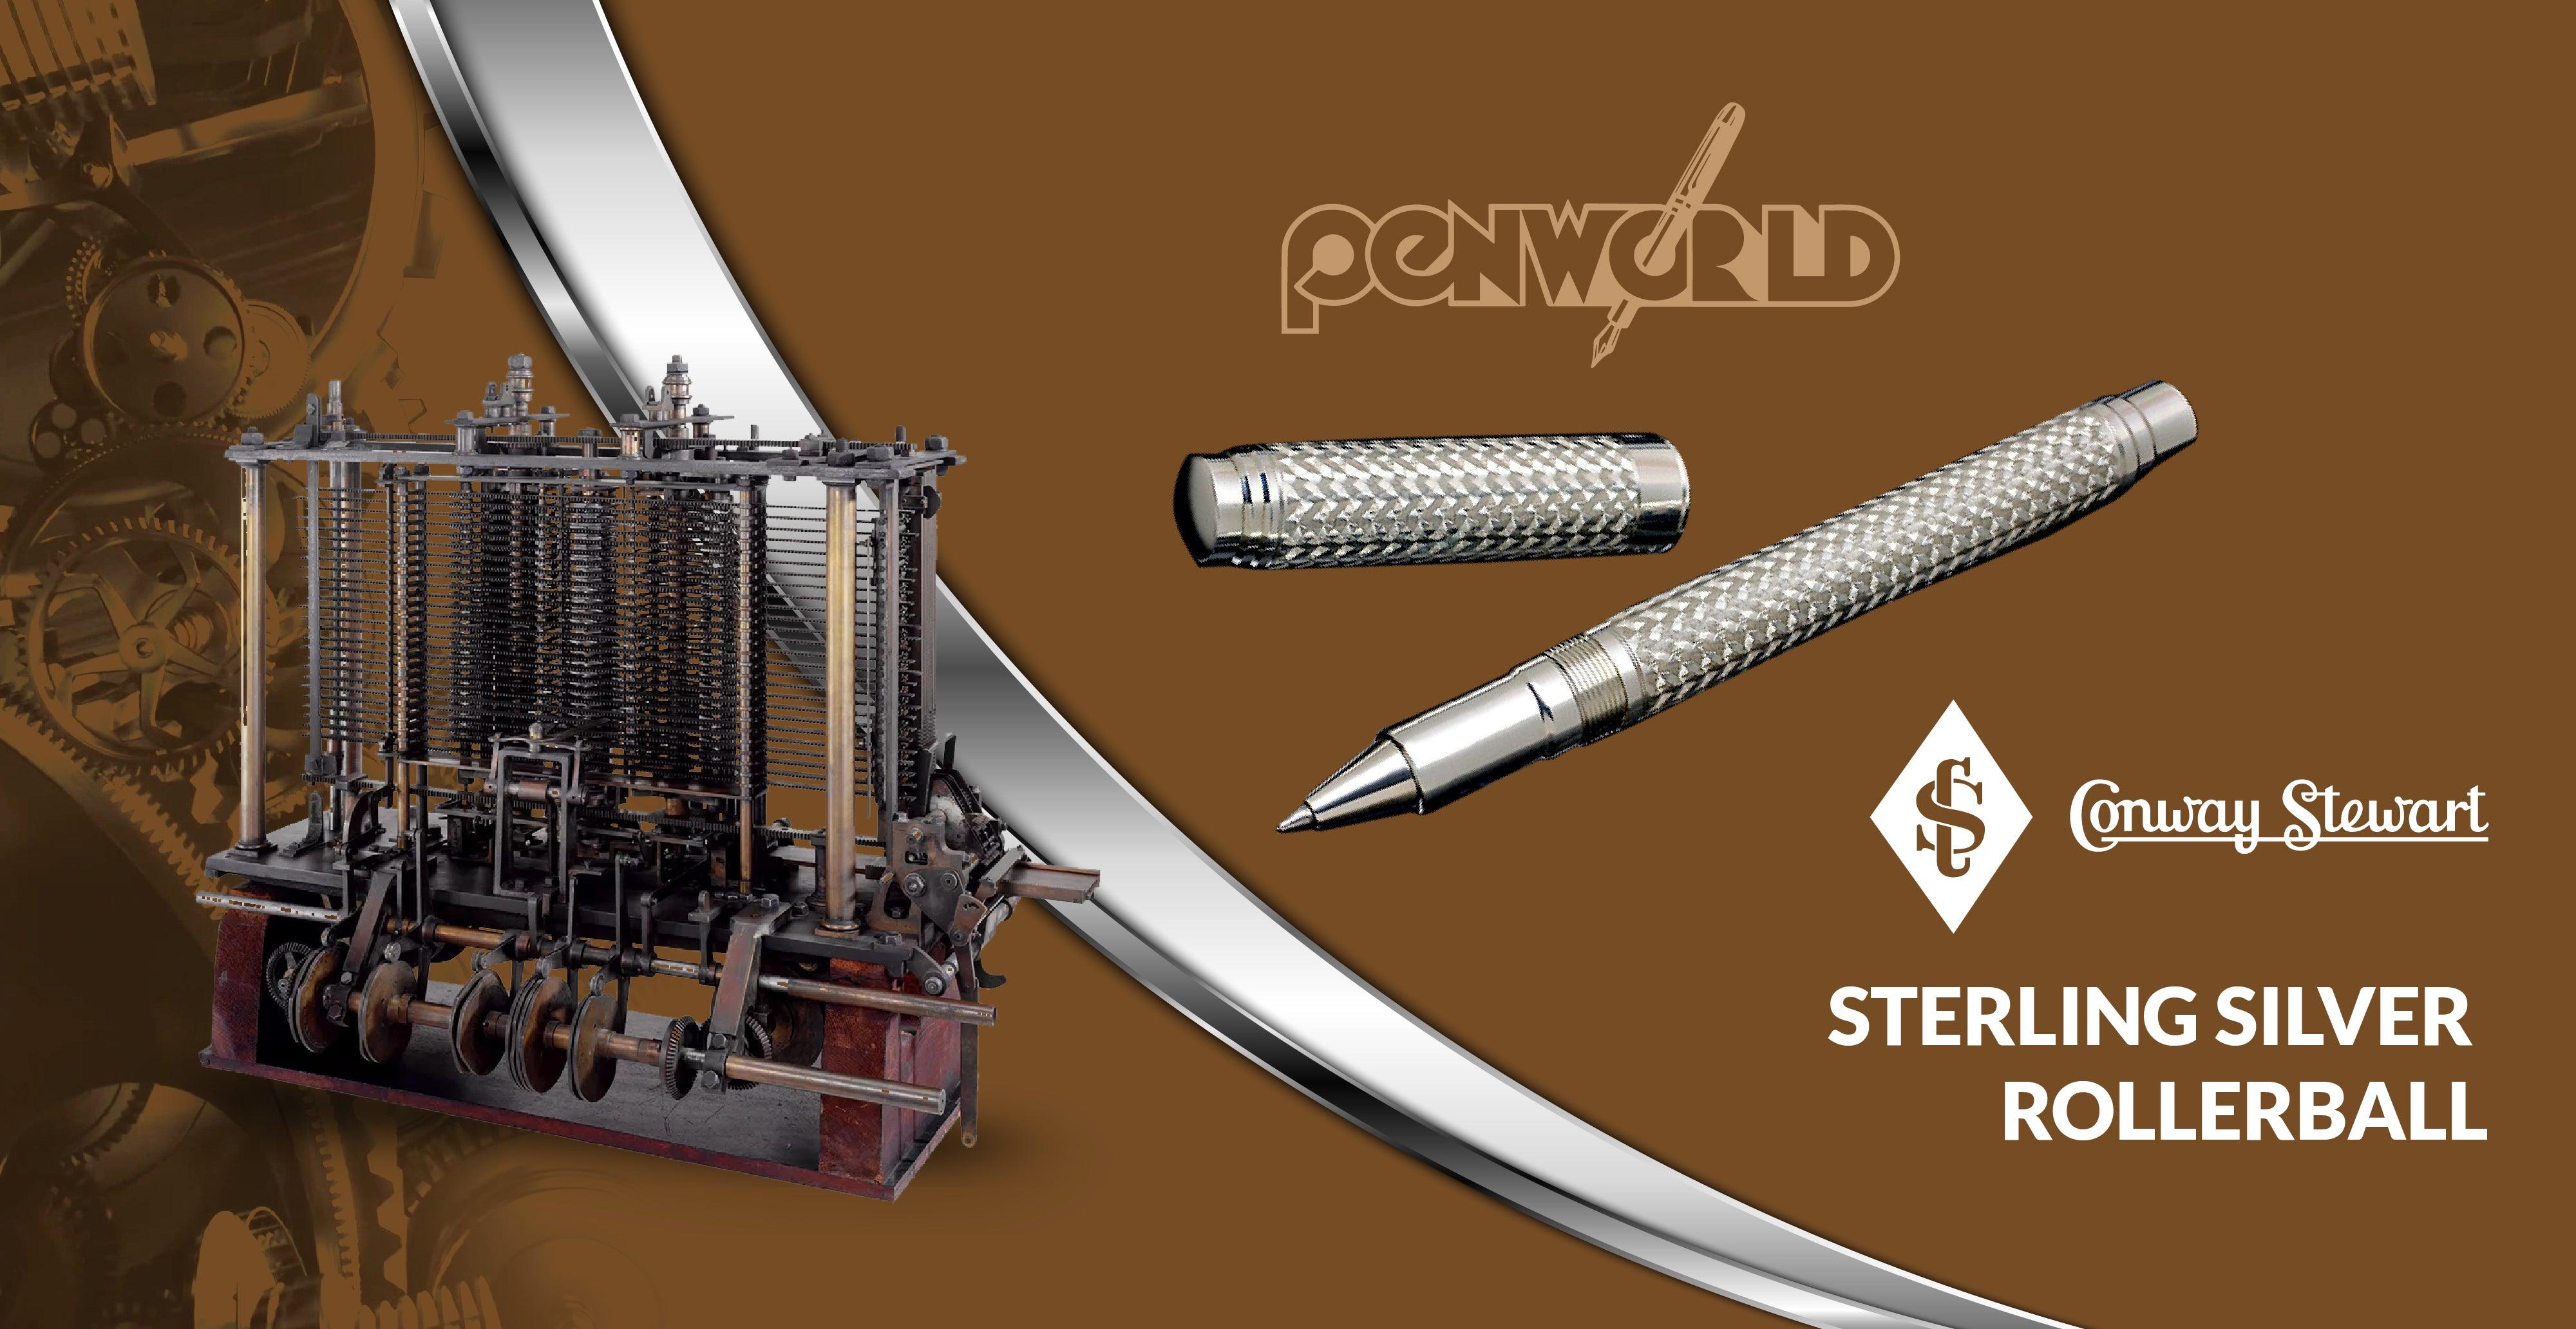 Penworld Babbage No. 1, 2008 - Conway Stewart